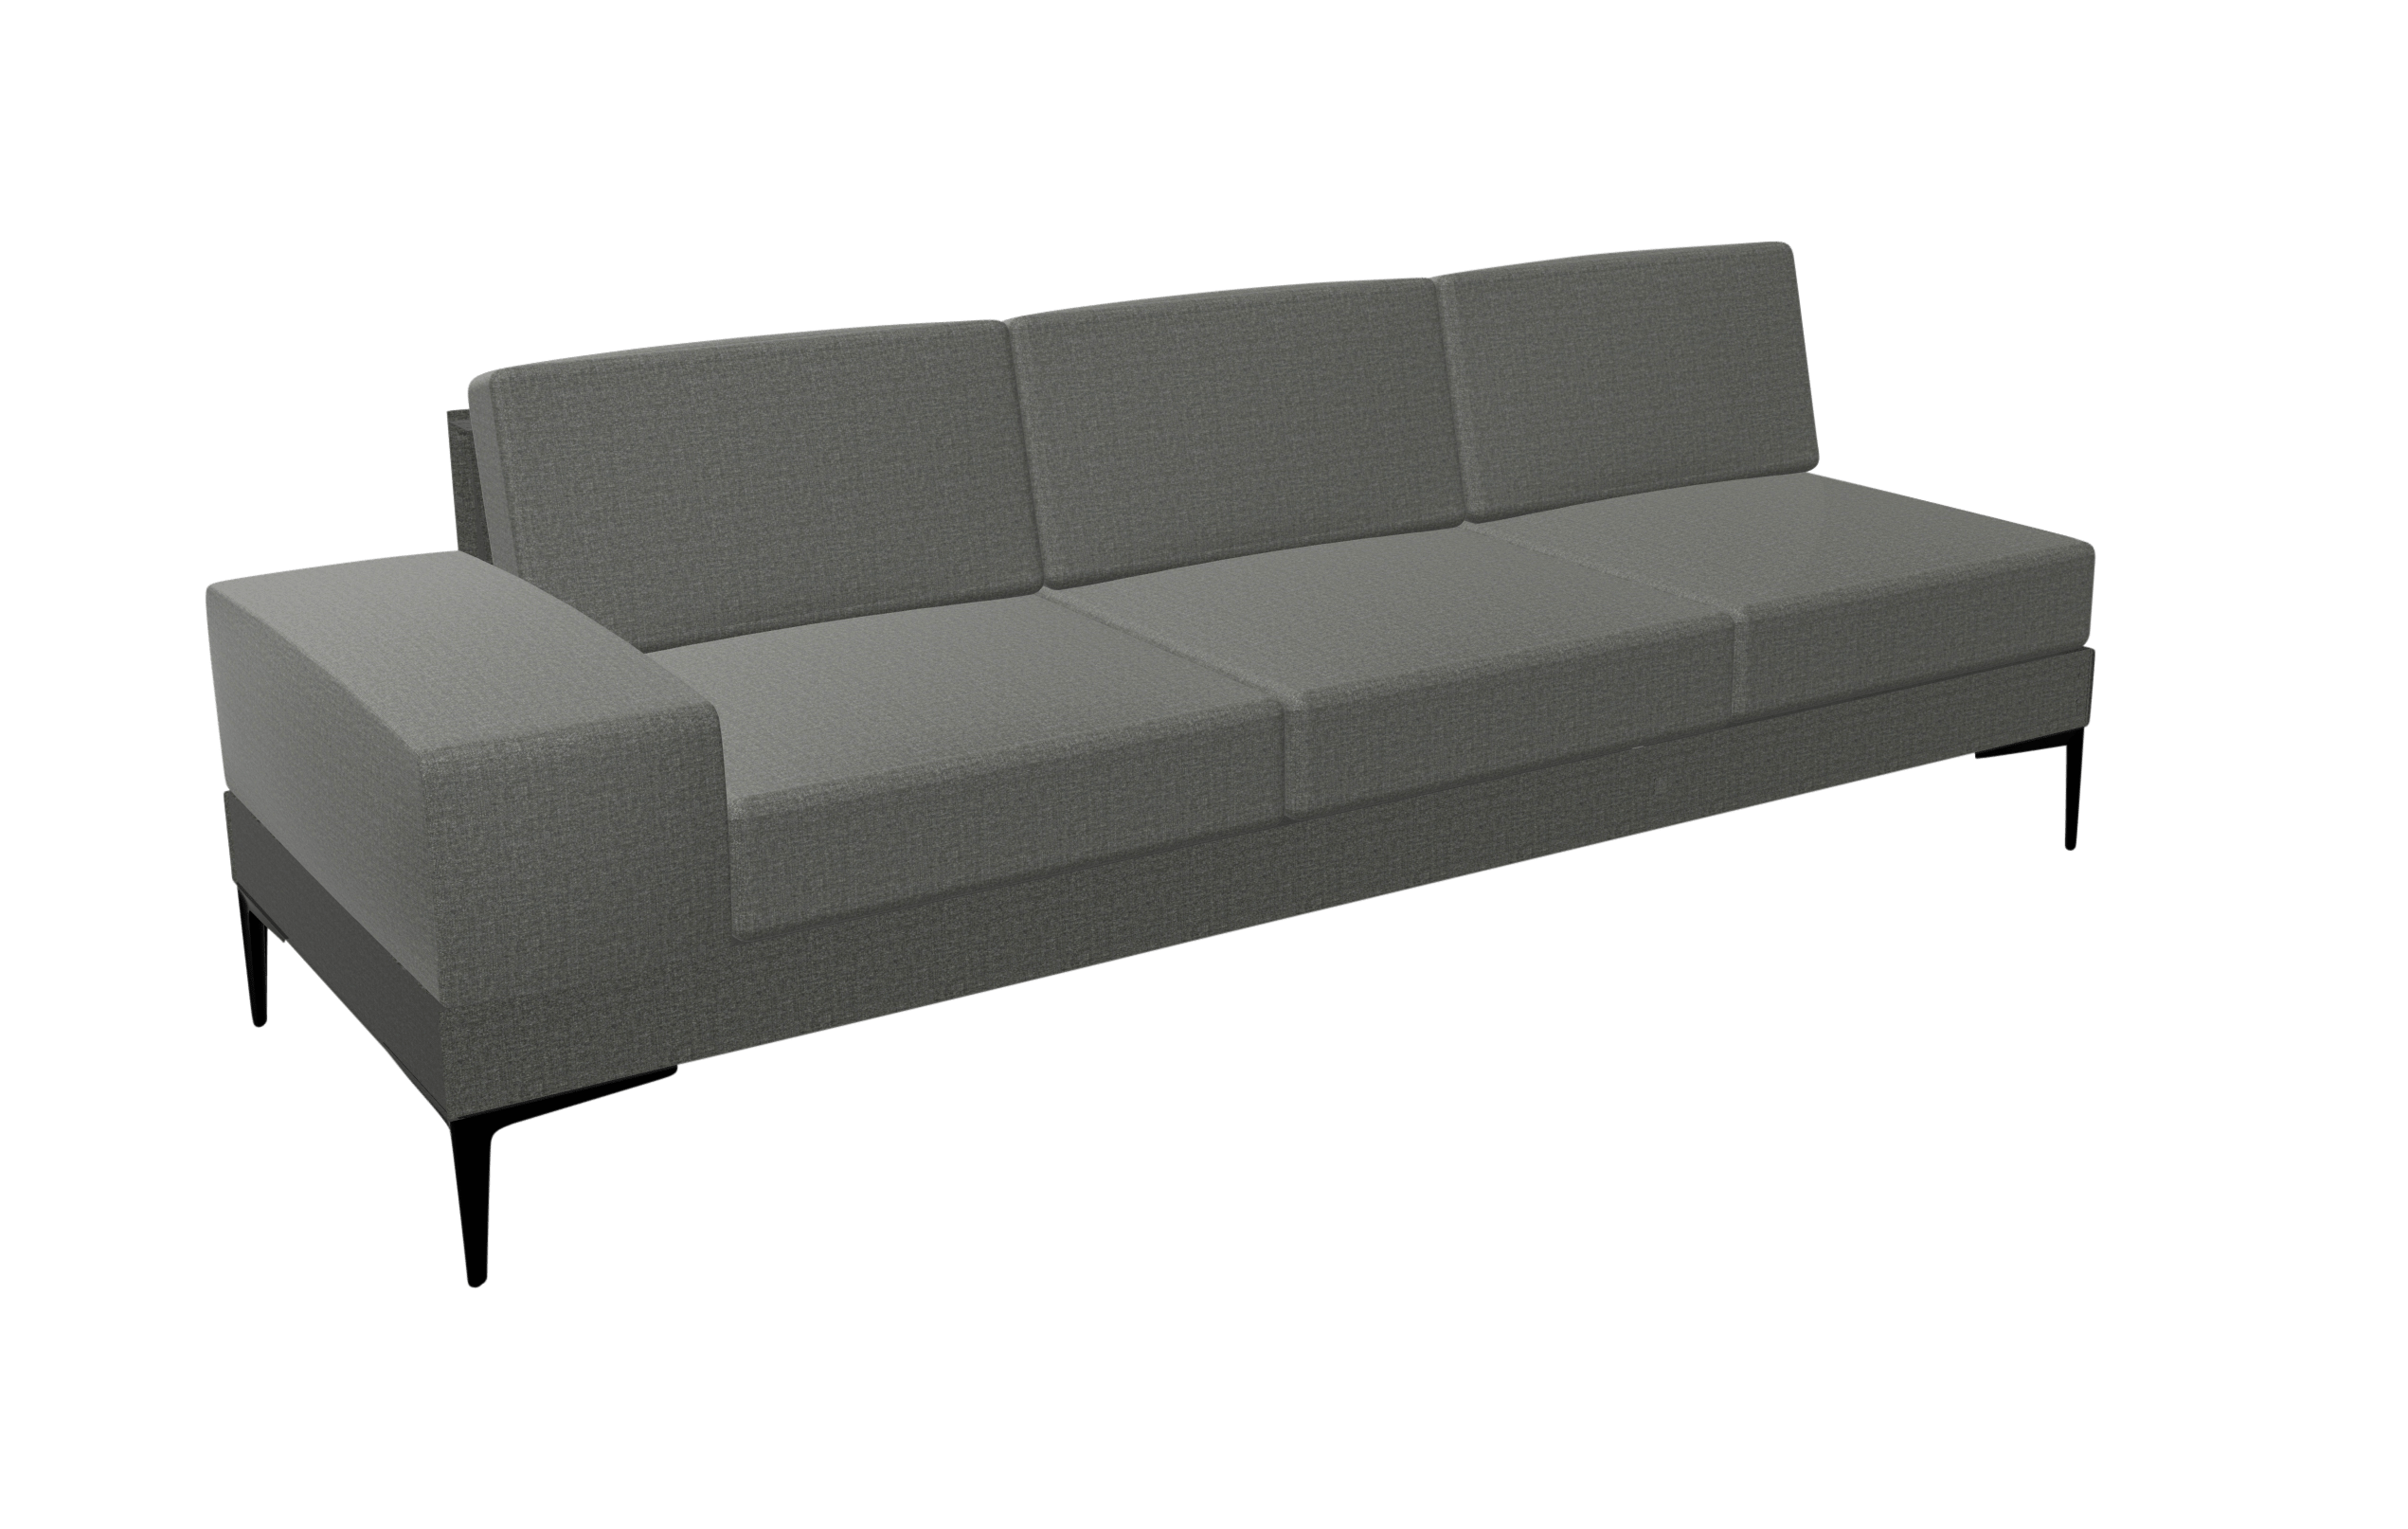 A grey sofa with black legs